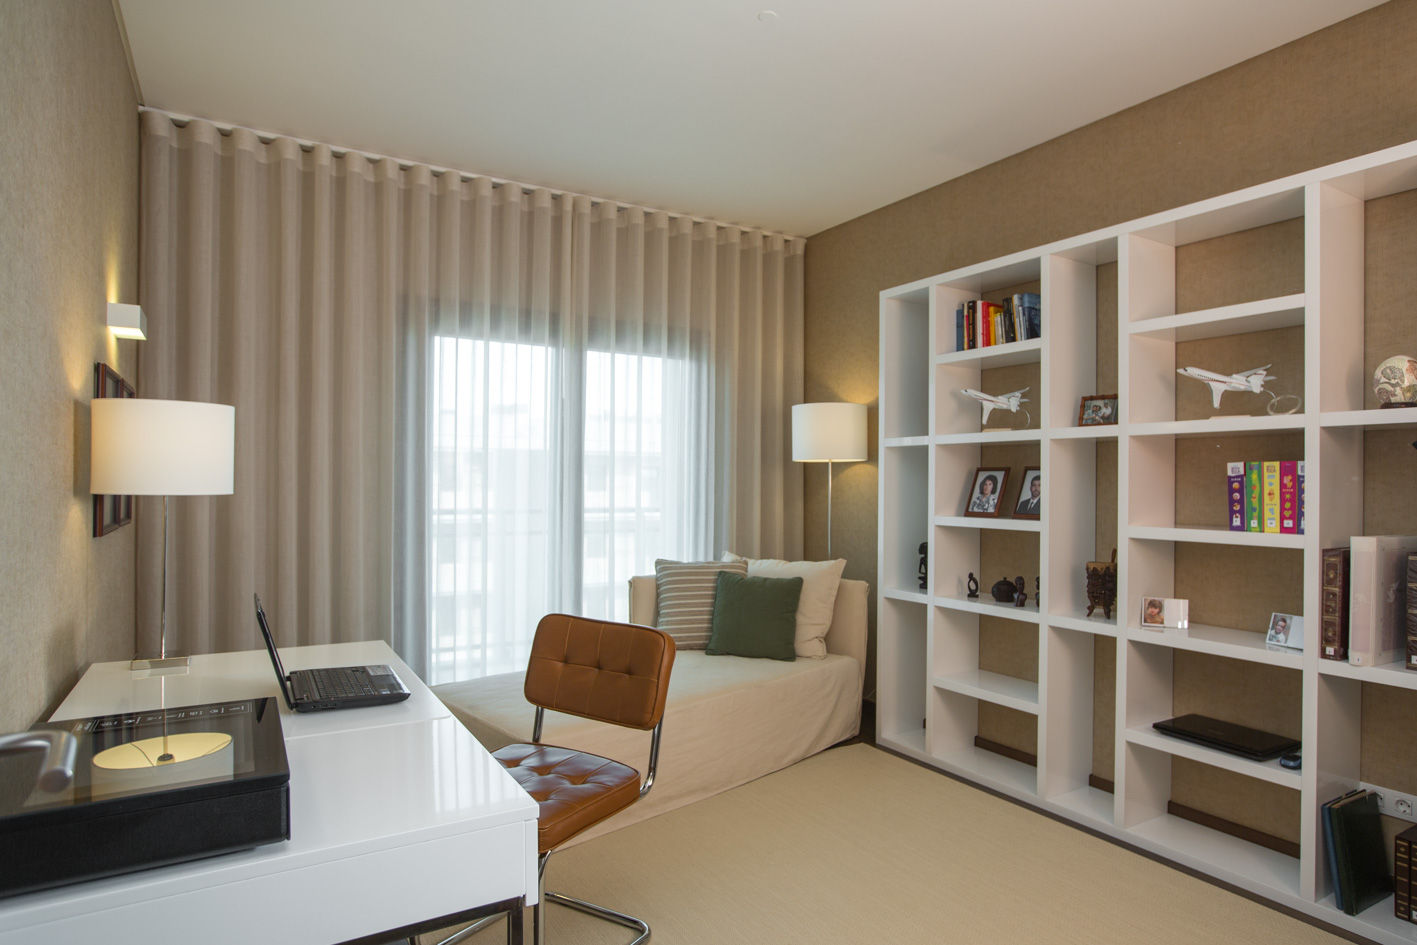 Um apartamento contemporâneo, Architect Your Home Architect Your Home Dormitorios de estilo moderno